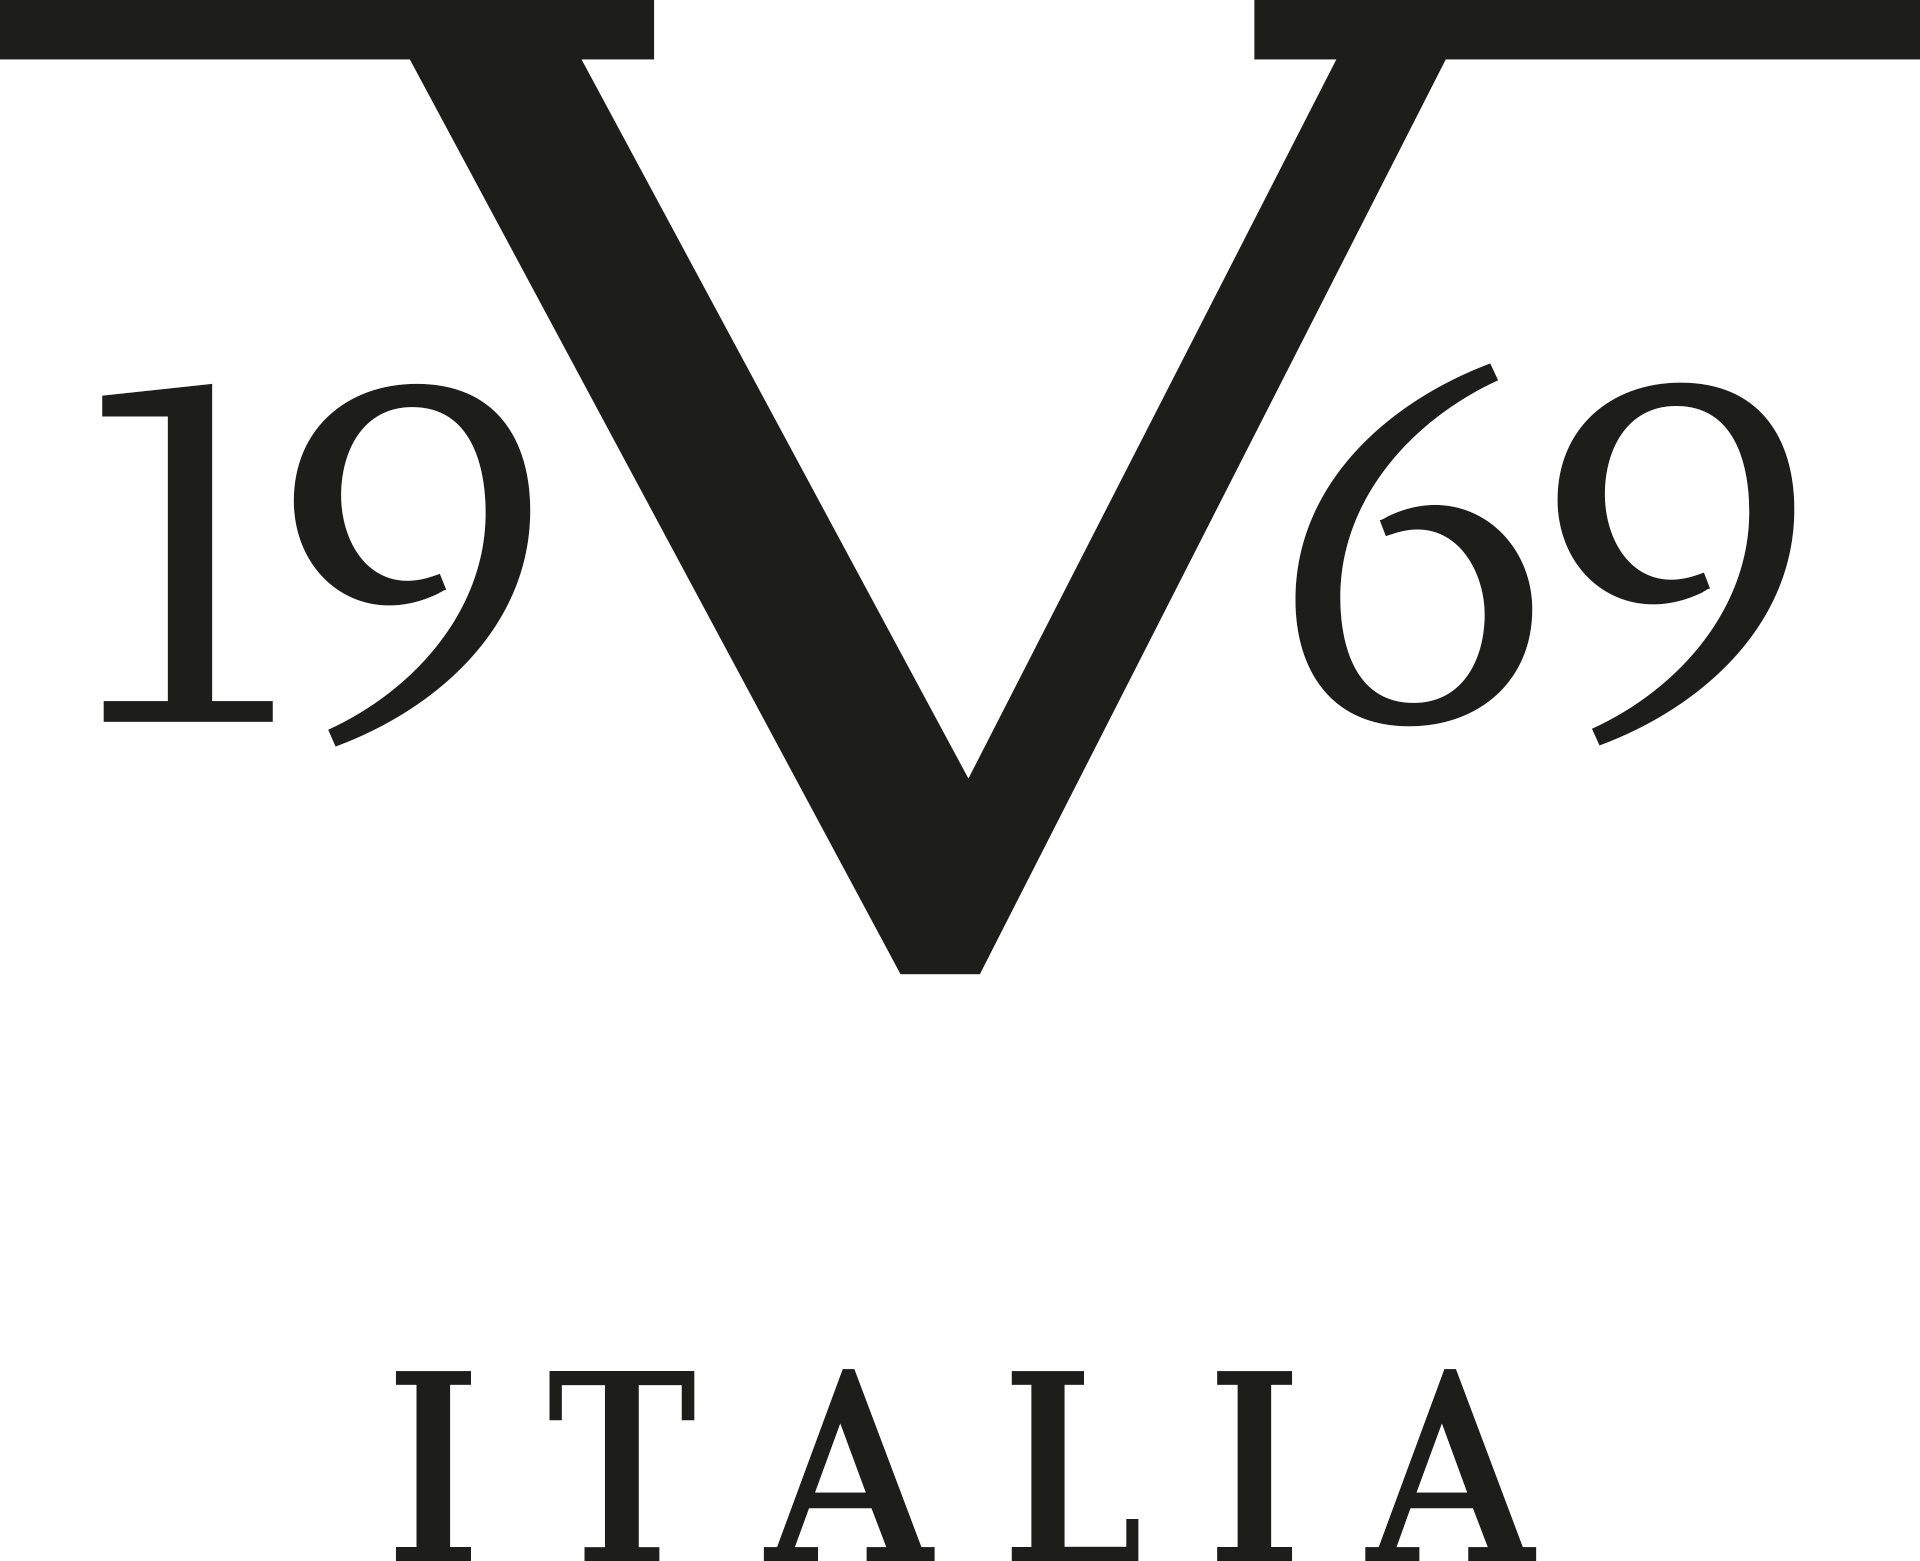 19V69 Italia by Versace Abbigliamento Sportivo SRL